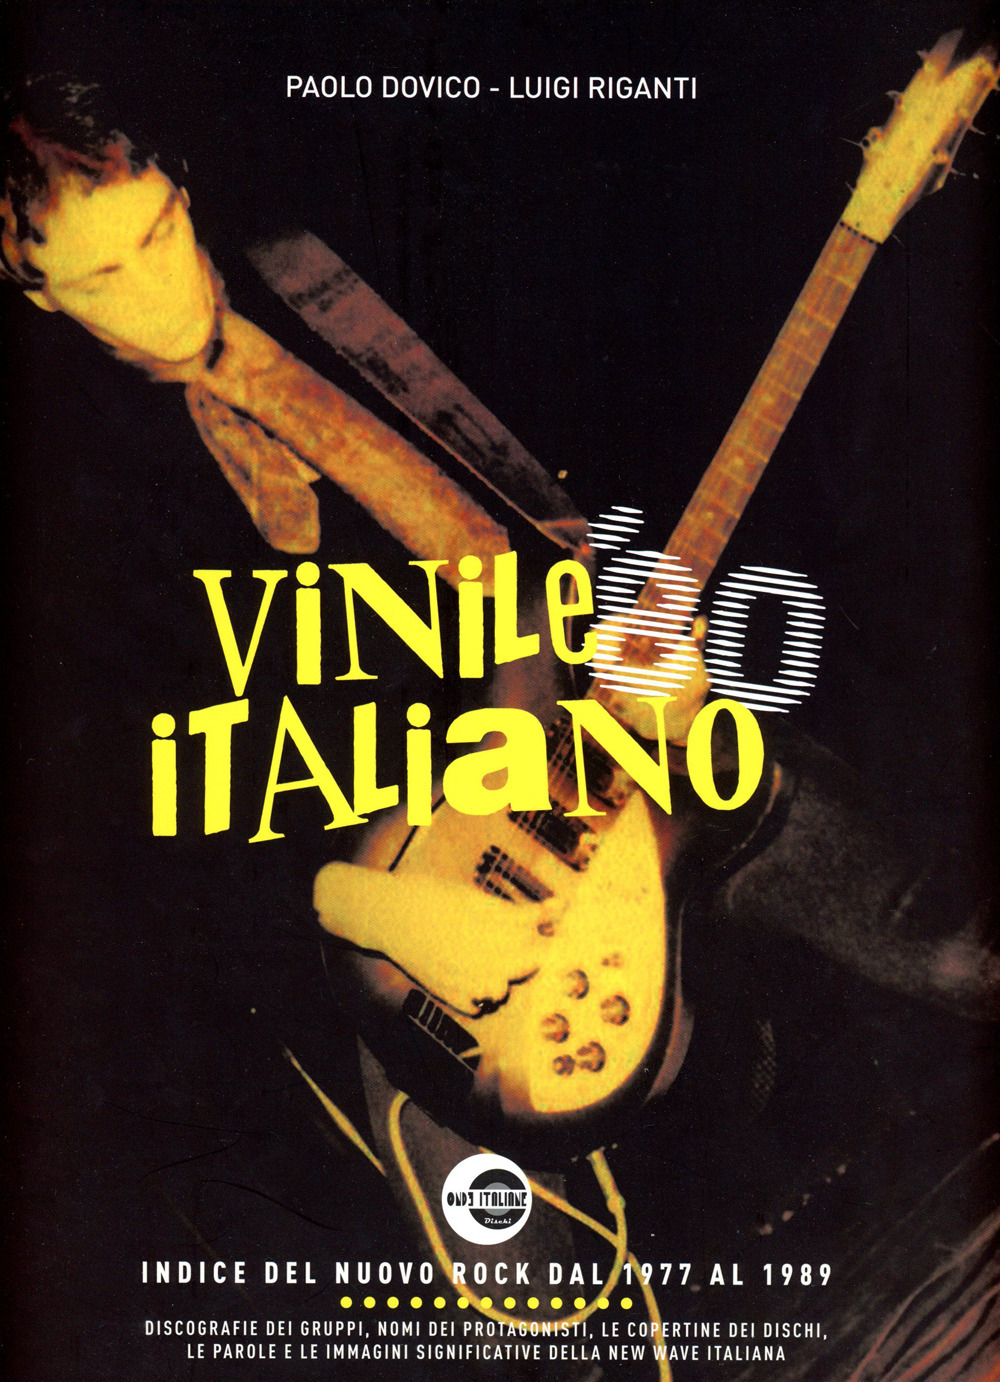 Libri Riganti Luigi / Paolo Dovico - Vinile Italiano '80 NUOVO SIGILLATO SUBITO DISPONIBILE